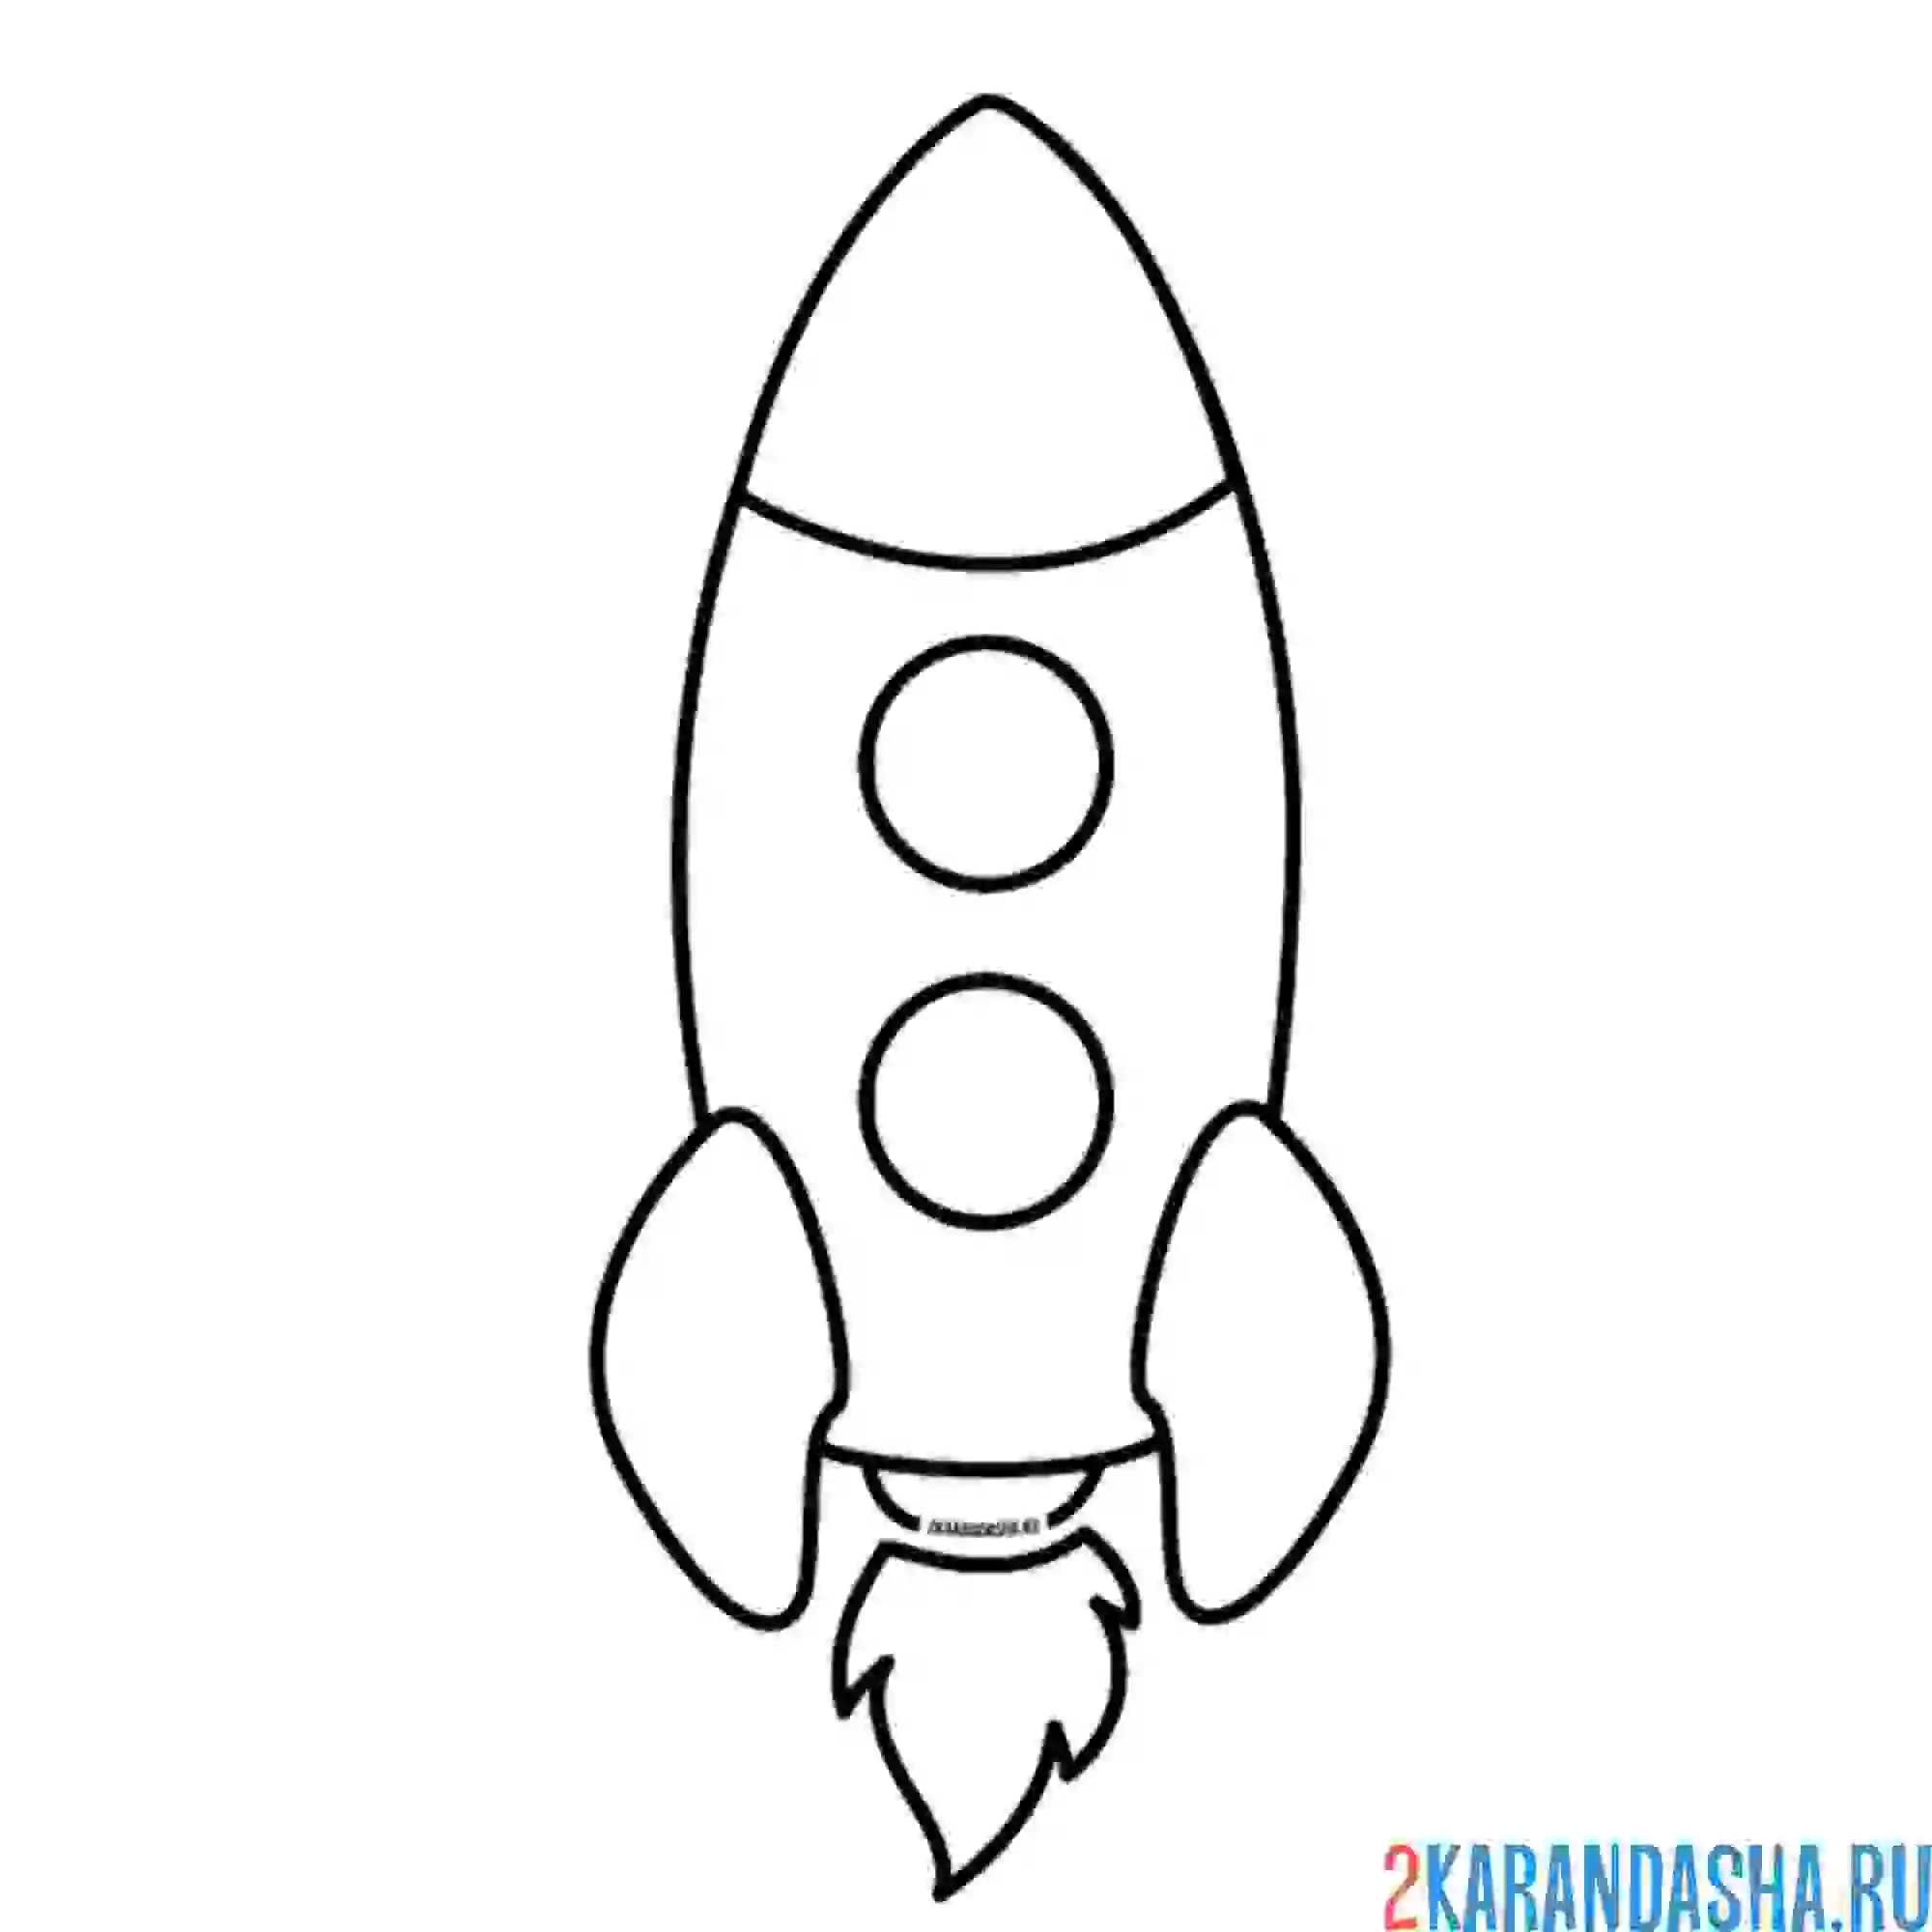 Раскраска ракета для детей 4 лет. Ракета раскраска. Ракета раскраска для малышей. Раскраска ракета в космосе для детей. Ракета трафарет для детей.